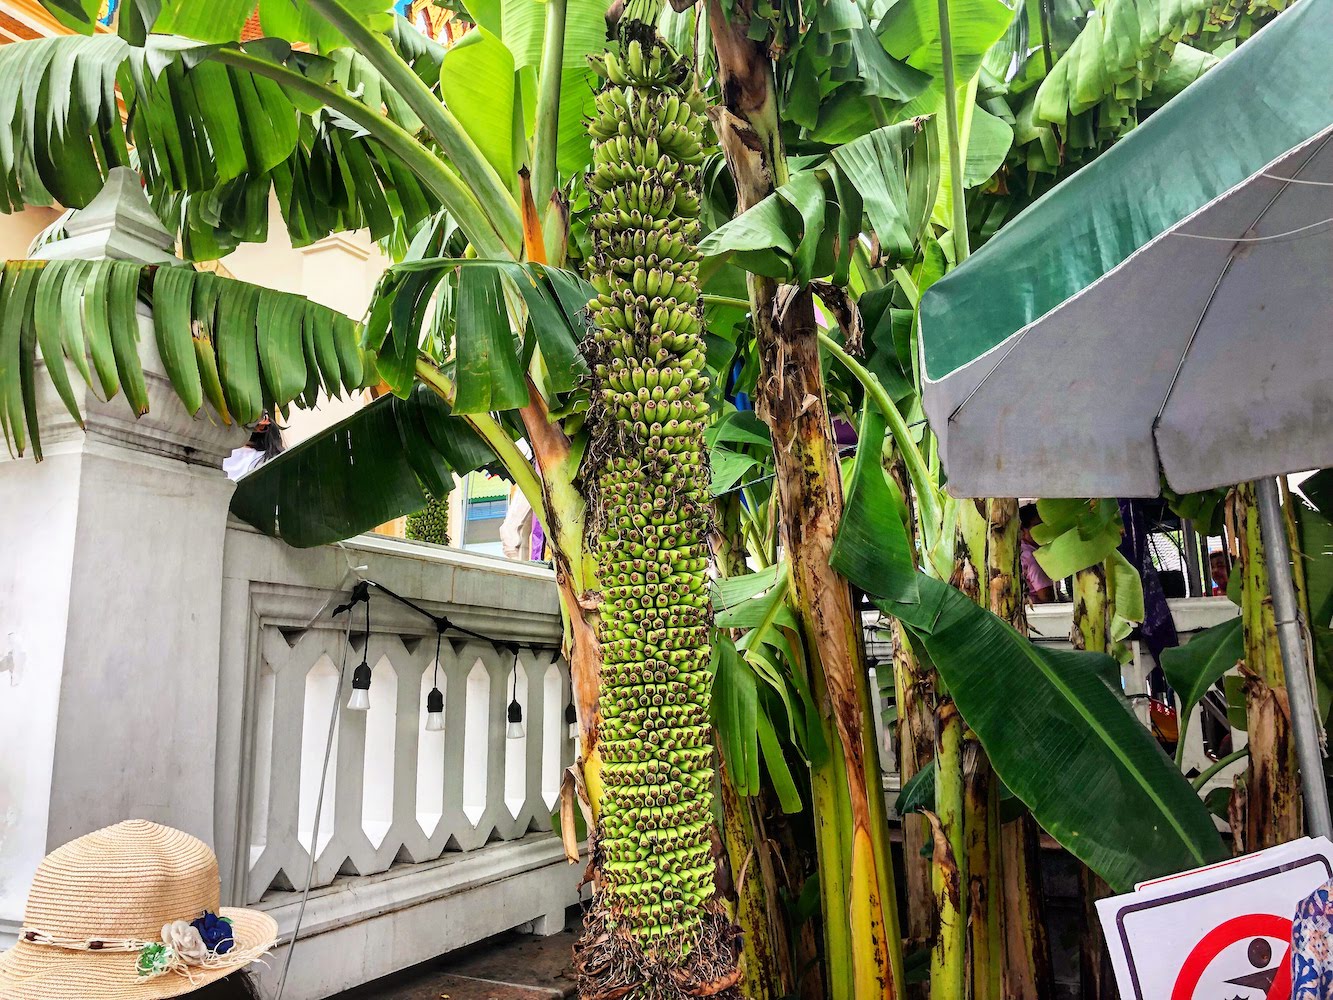 A banana tree with hundreds of bananas.